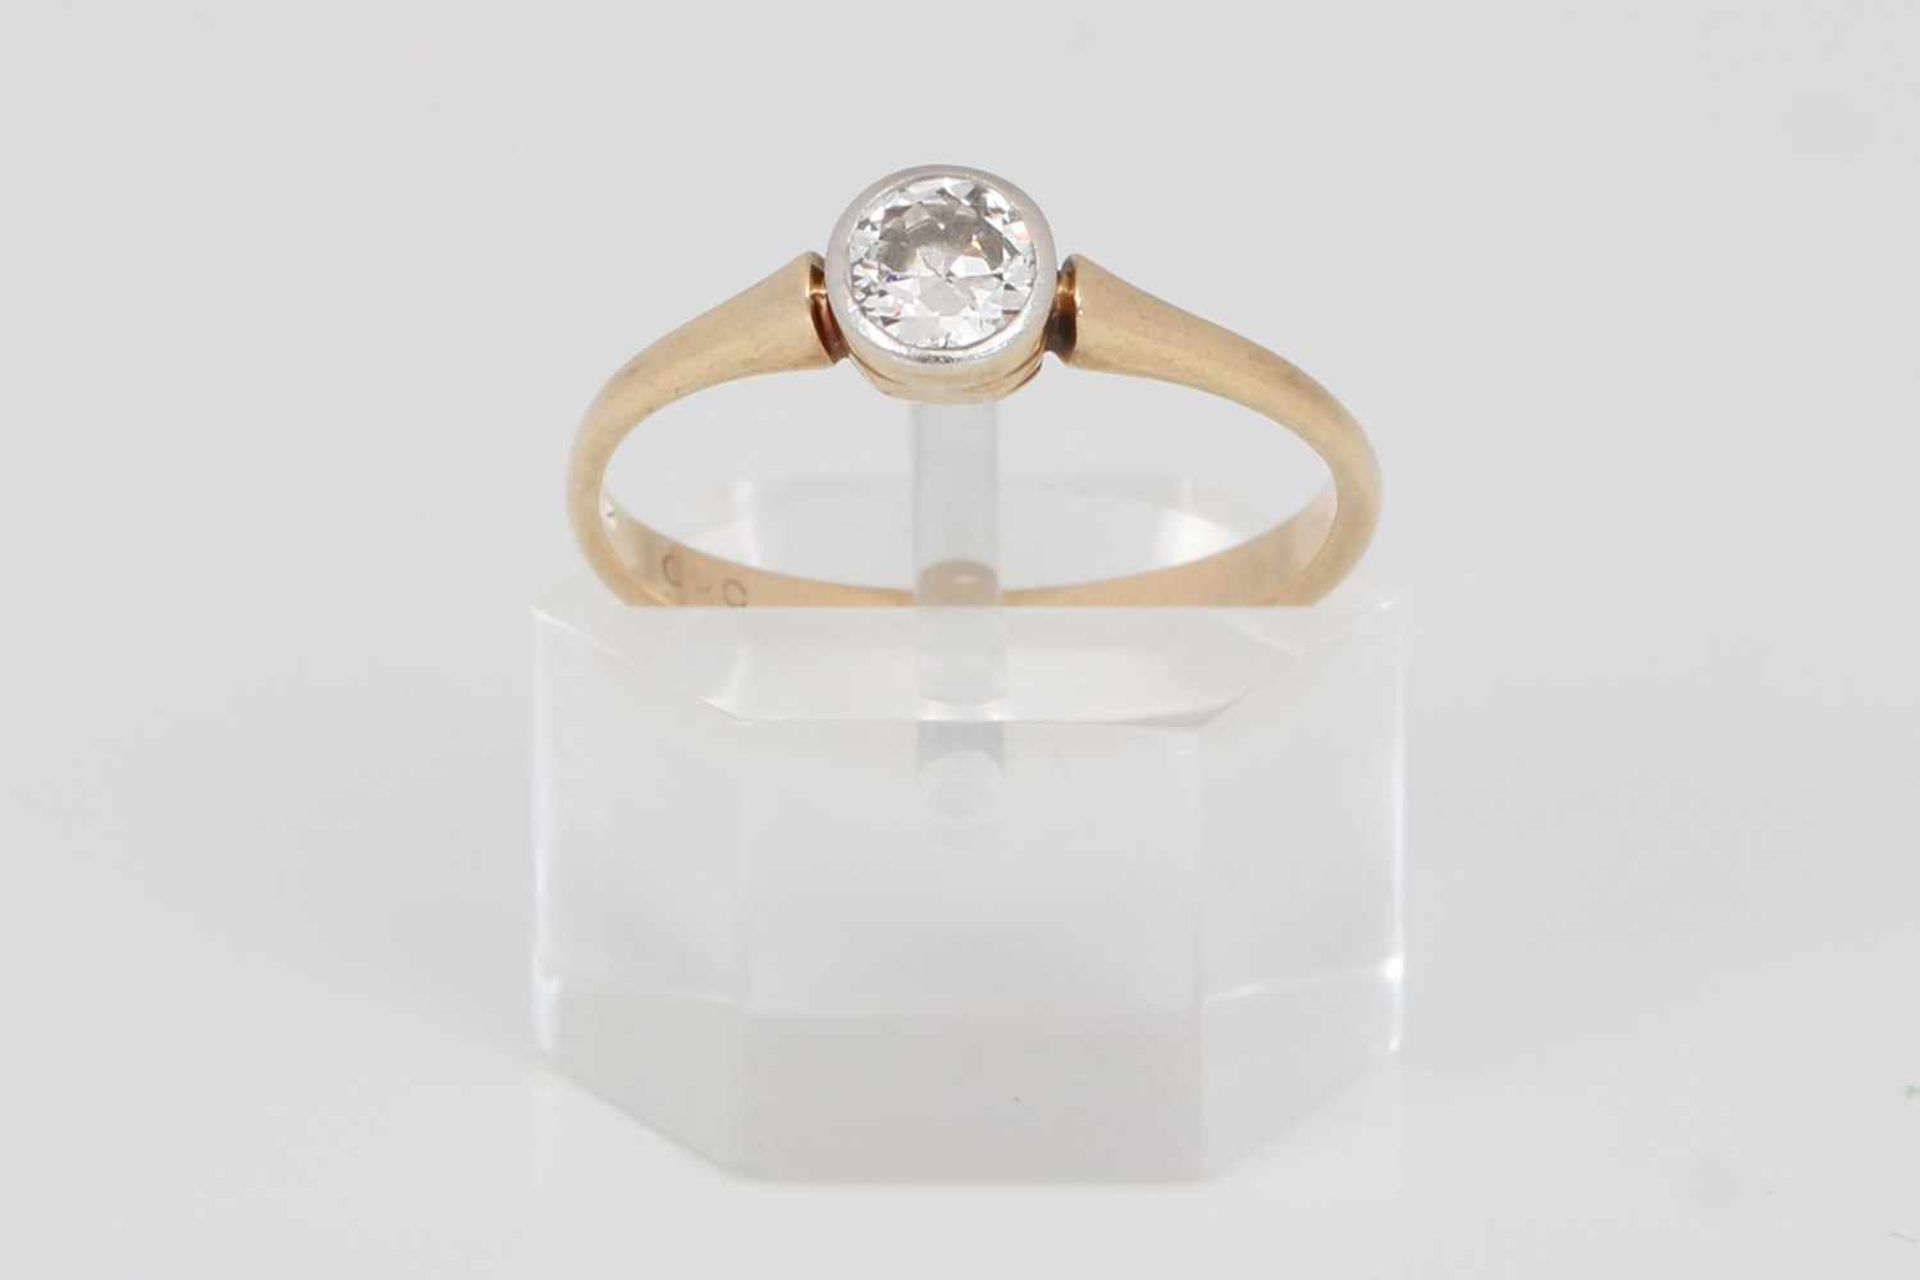 Antiker Ring mit Diamantsolitär585er Gelbgold, zarte Schiene mit 1 Diamant im Brillantschliff, ca. - Bild 2 aus 2